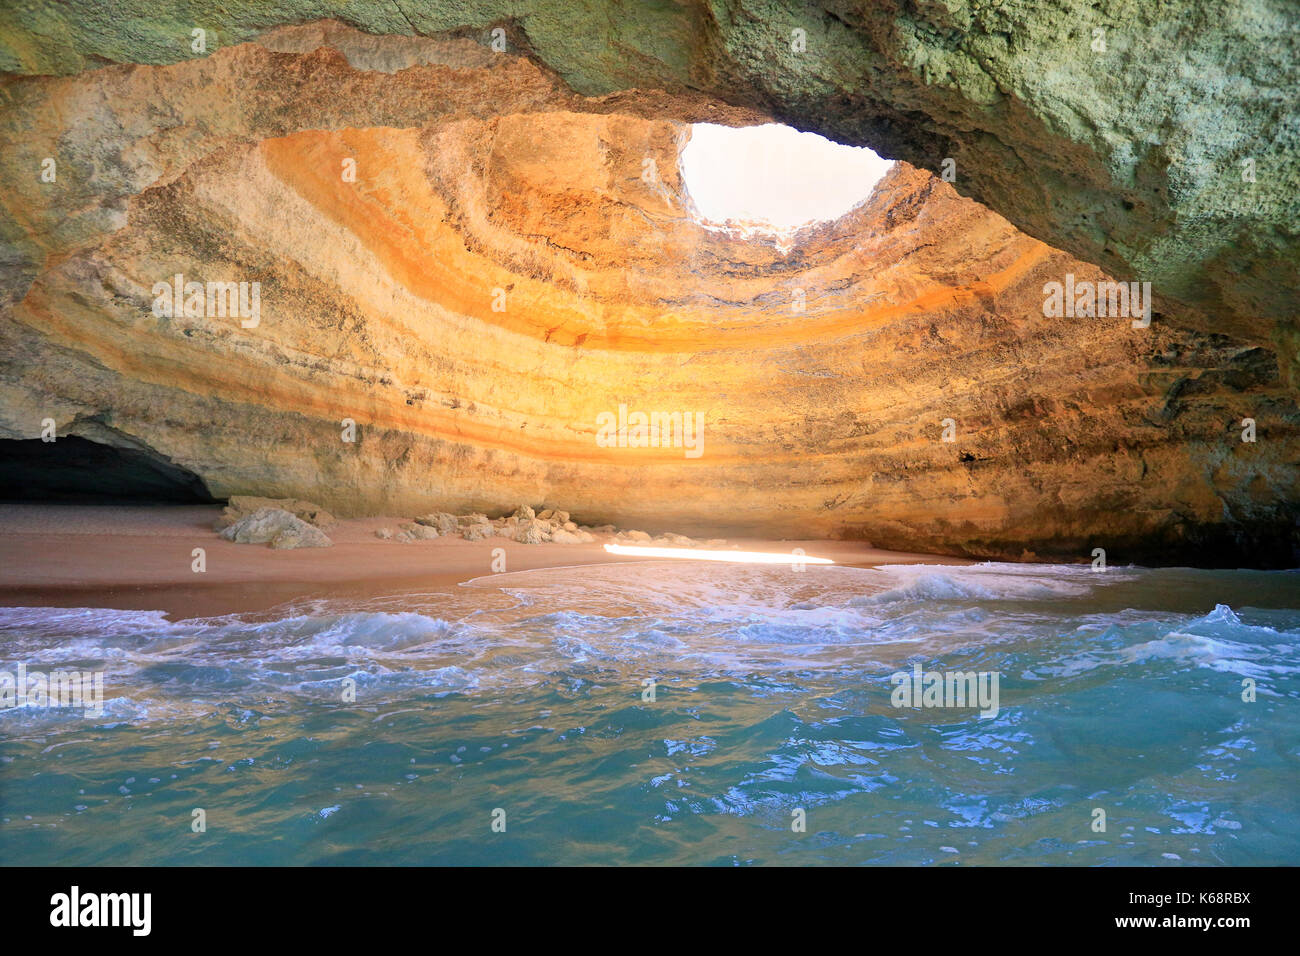 Natural Cave in Benagil, Algarve, Portugal Stock Photo